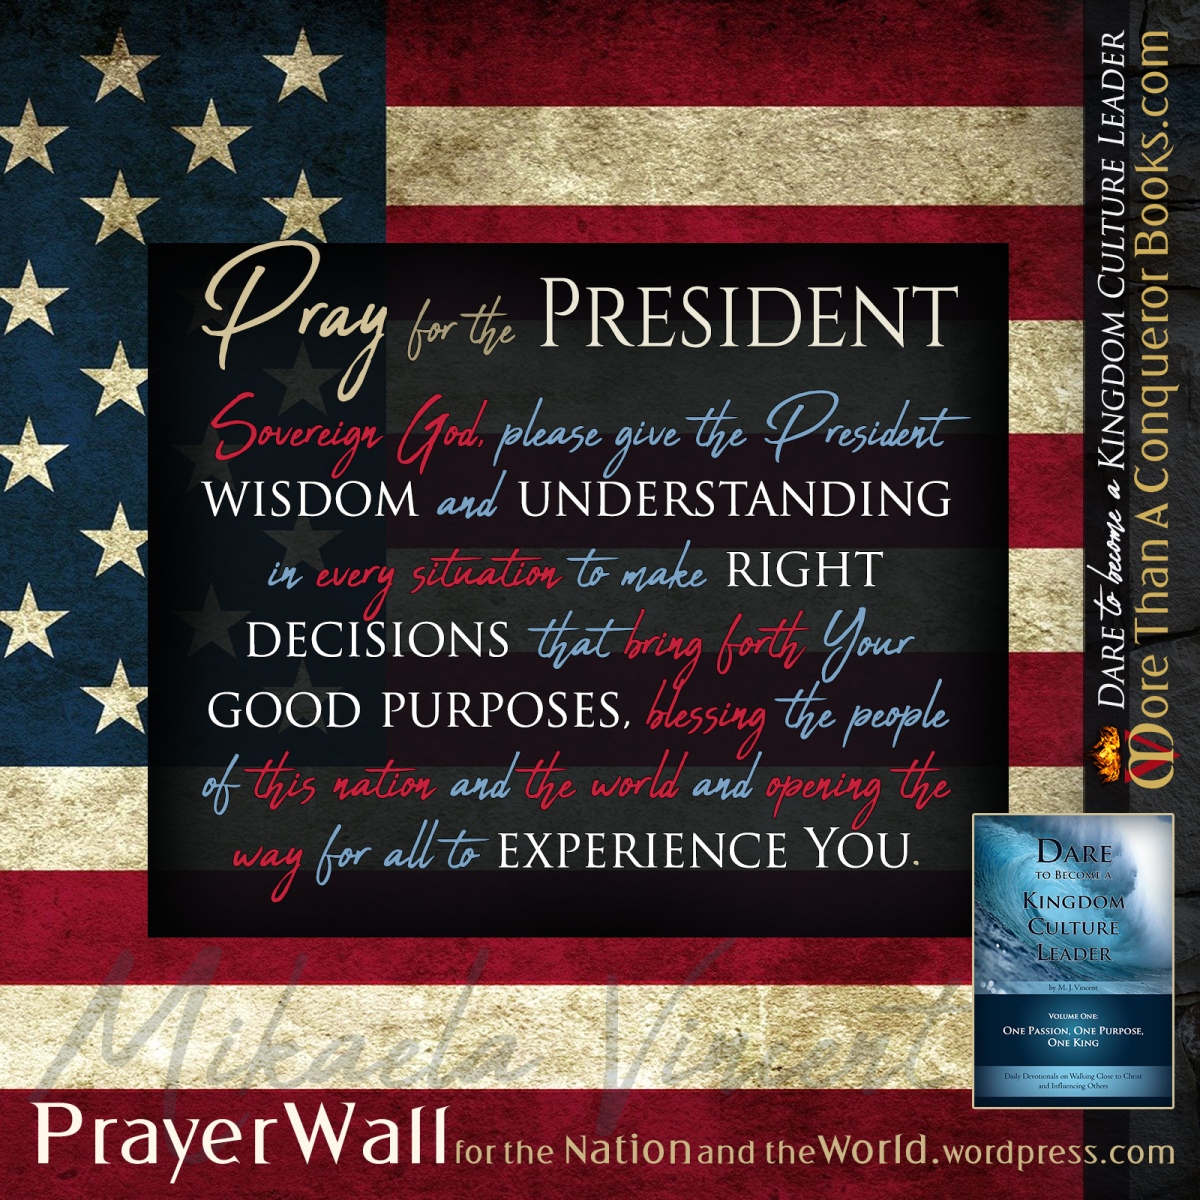 Pray for the President